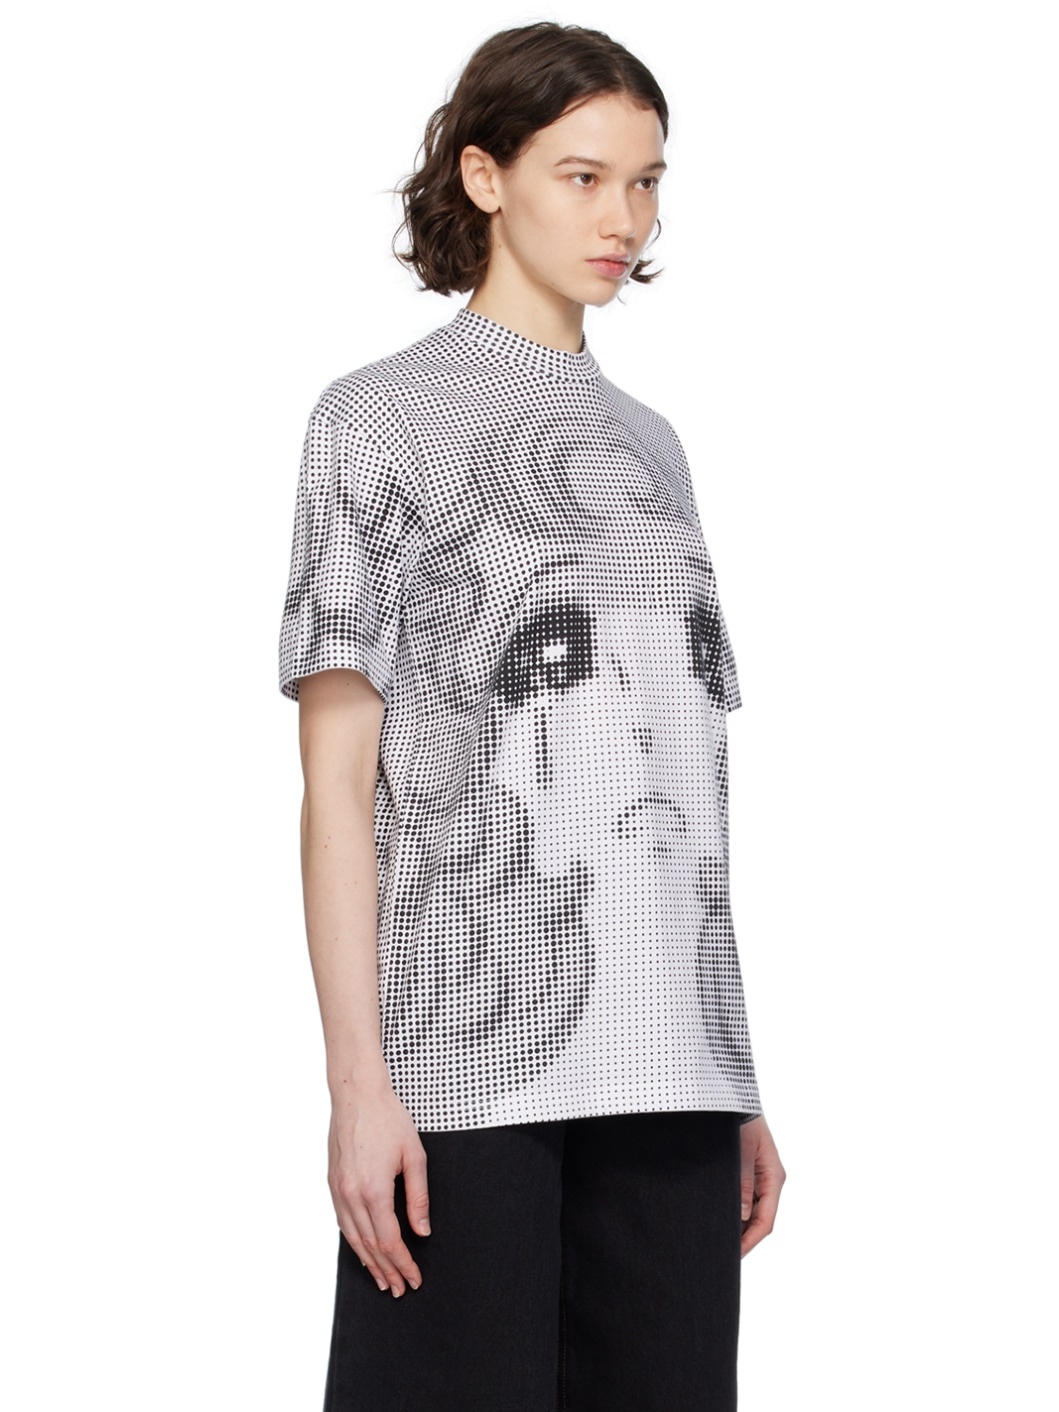 Black & White Pixel Crying Girl T-Shirt - 2